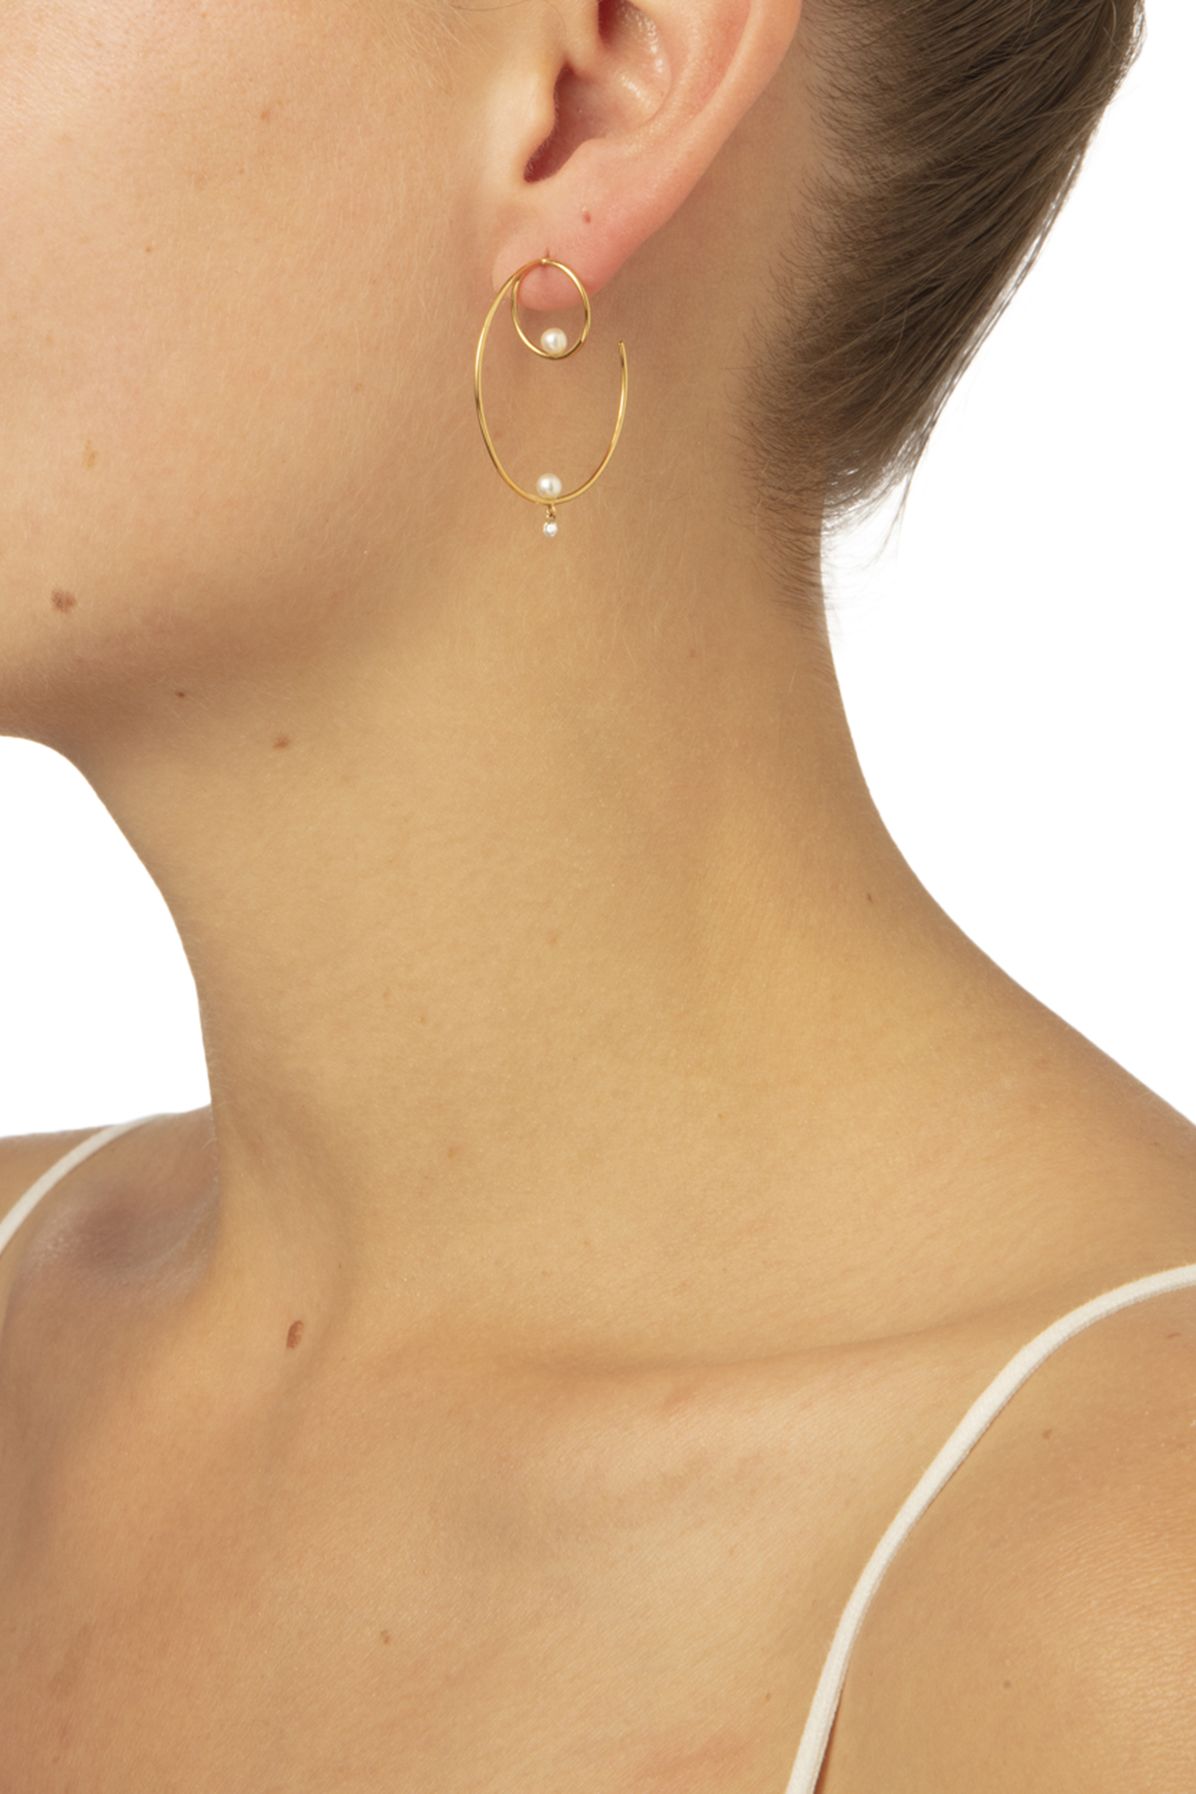 Persée Single earring Créole pearl 1 diamonds